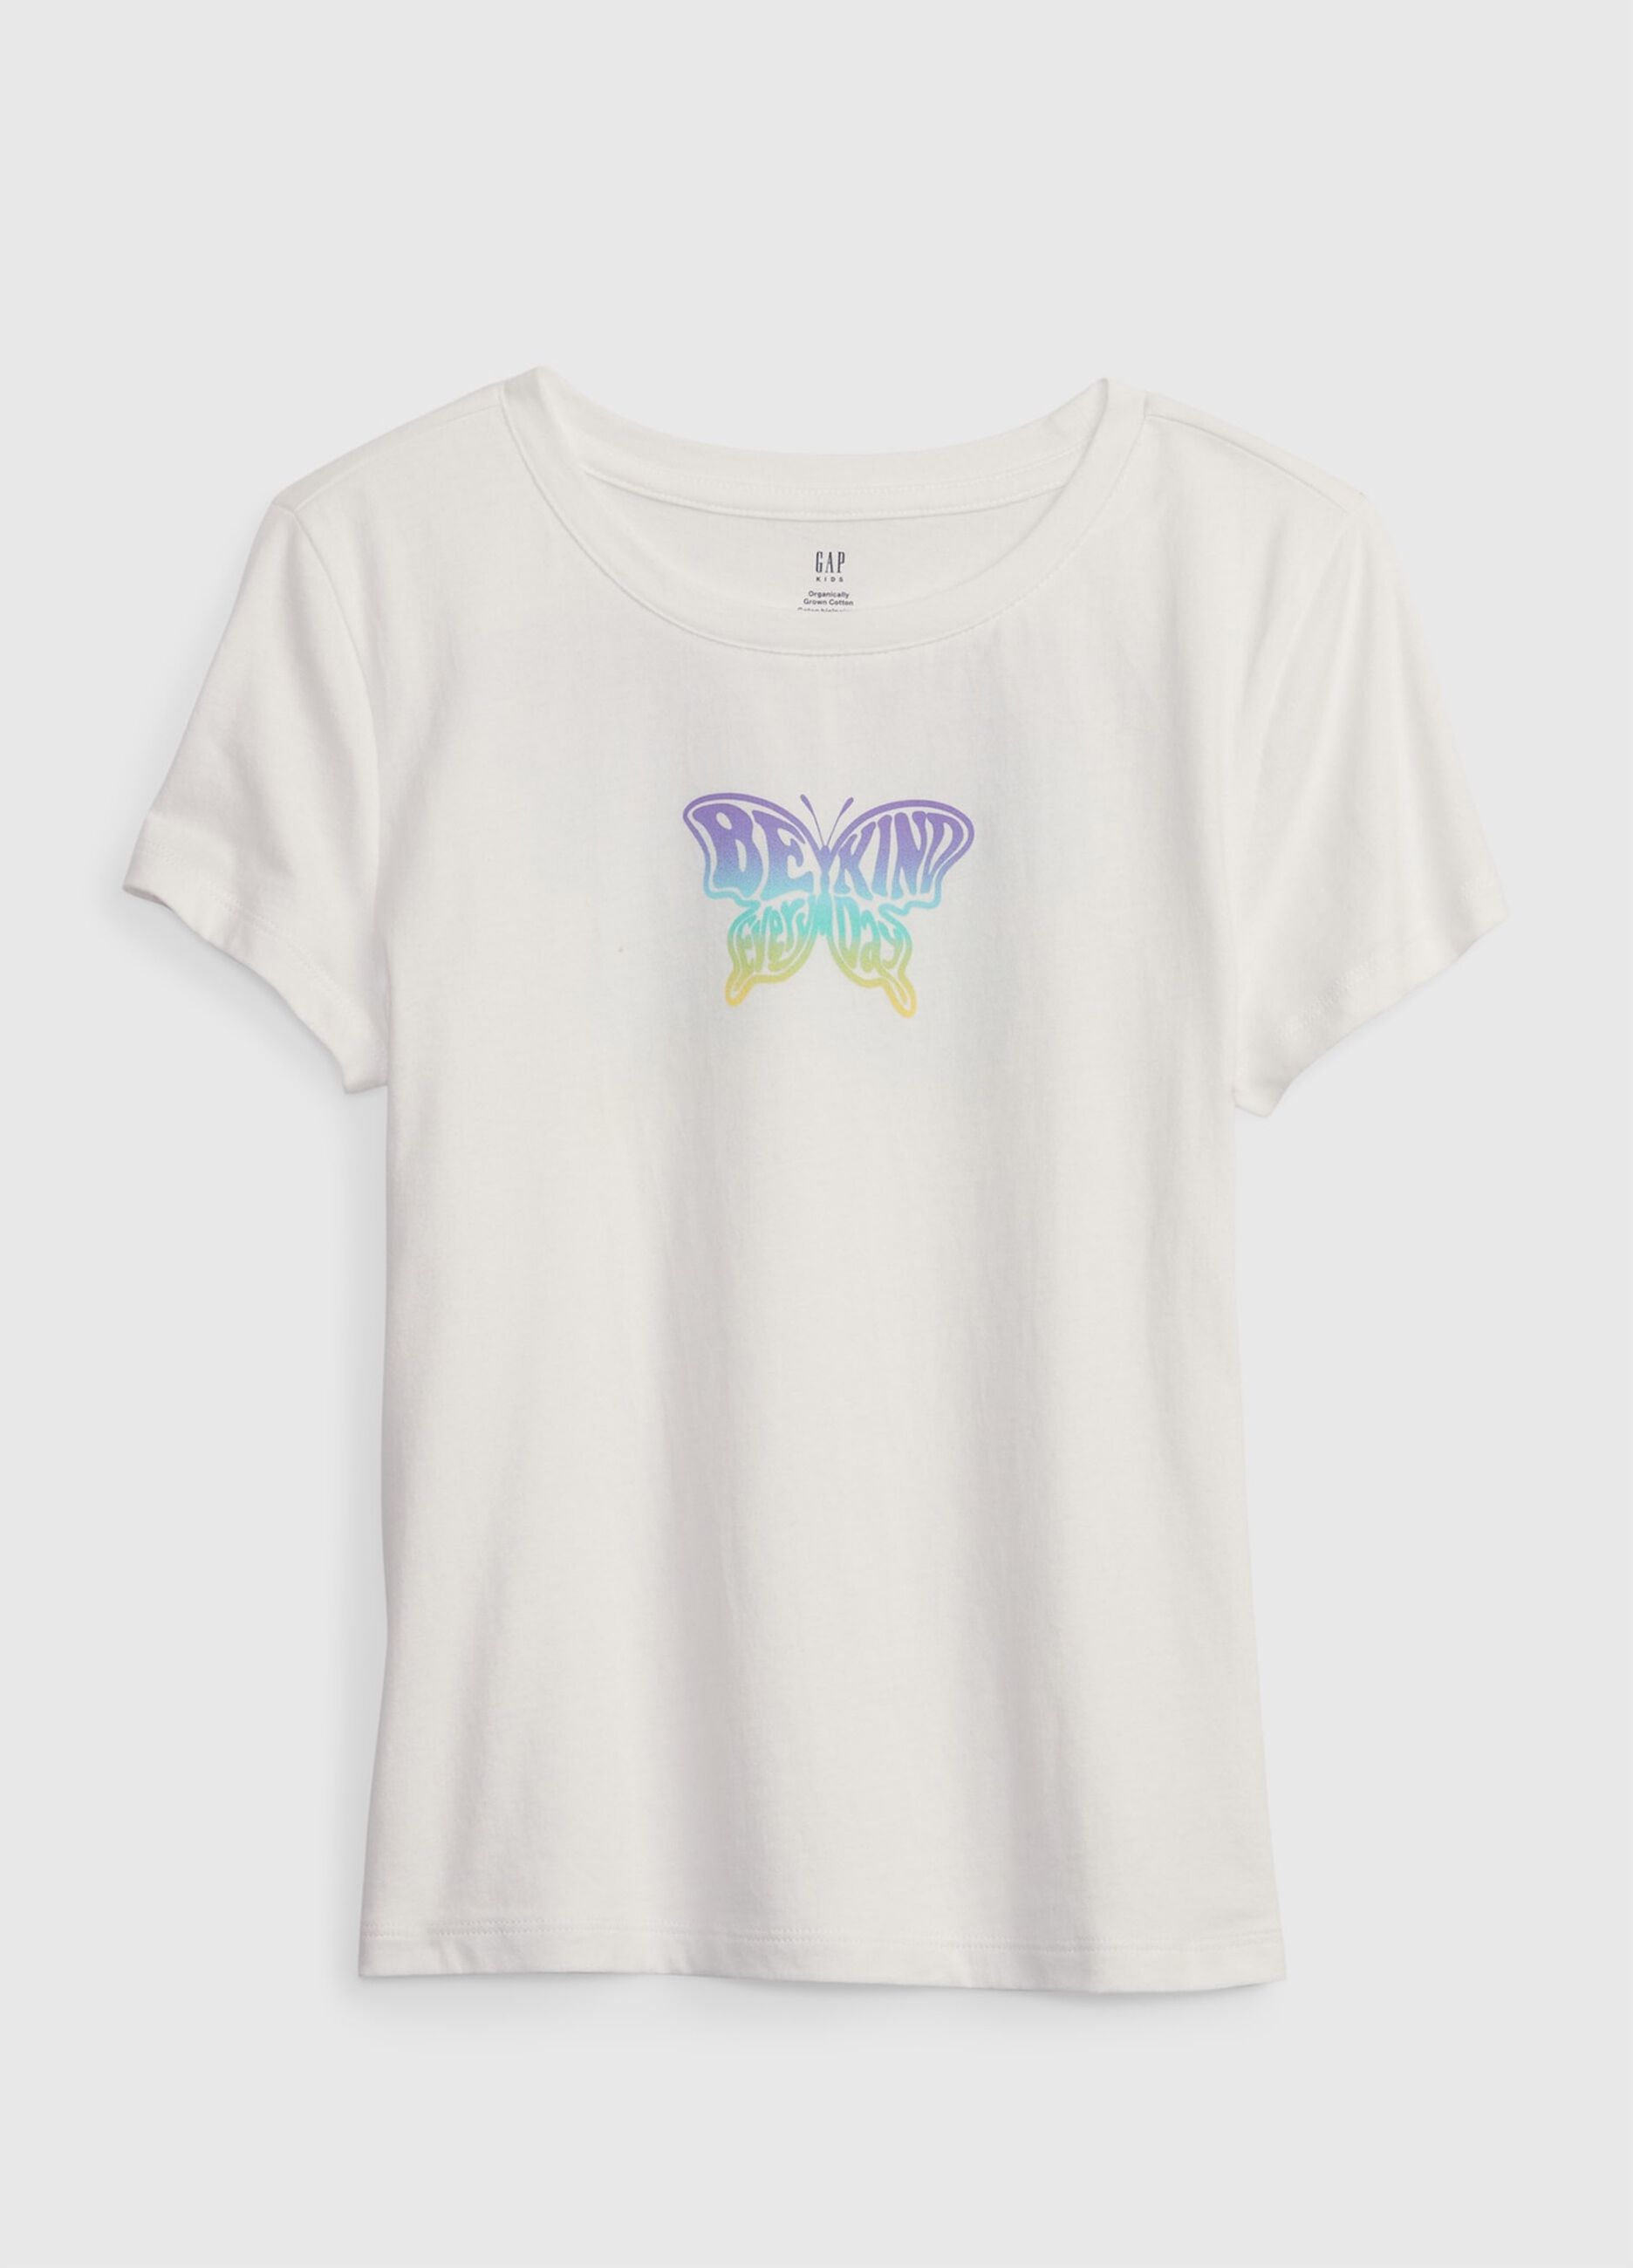 T-shirt with degradé butterfly print